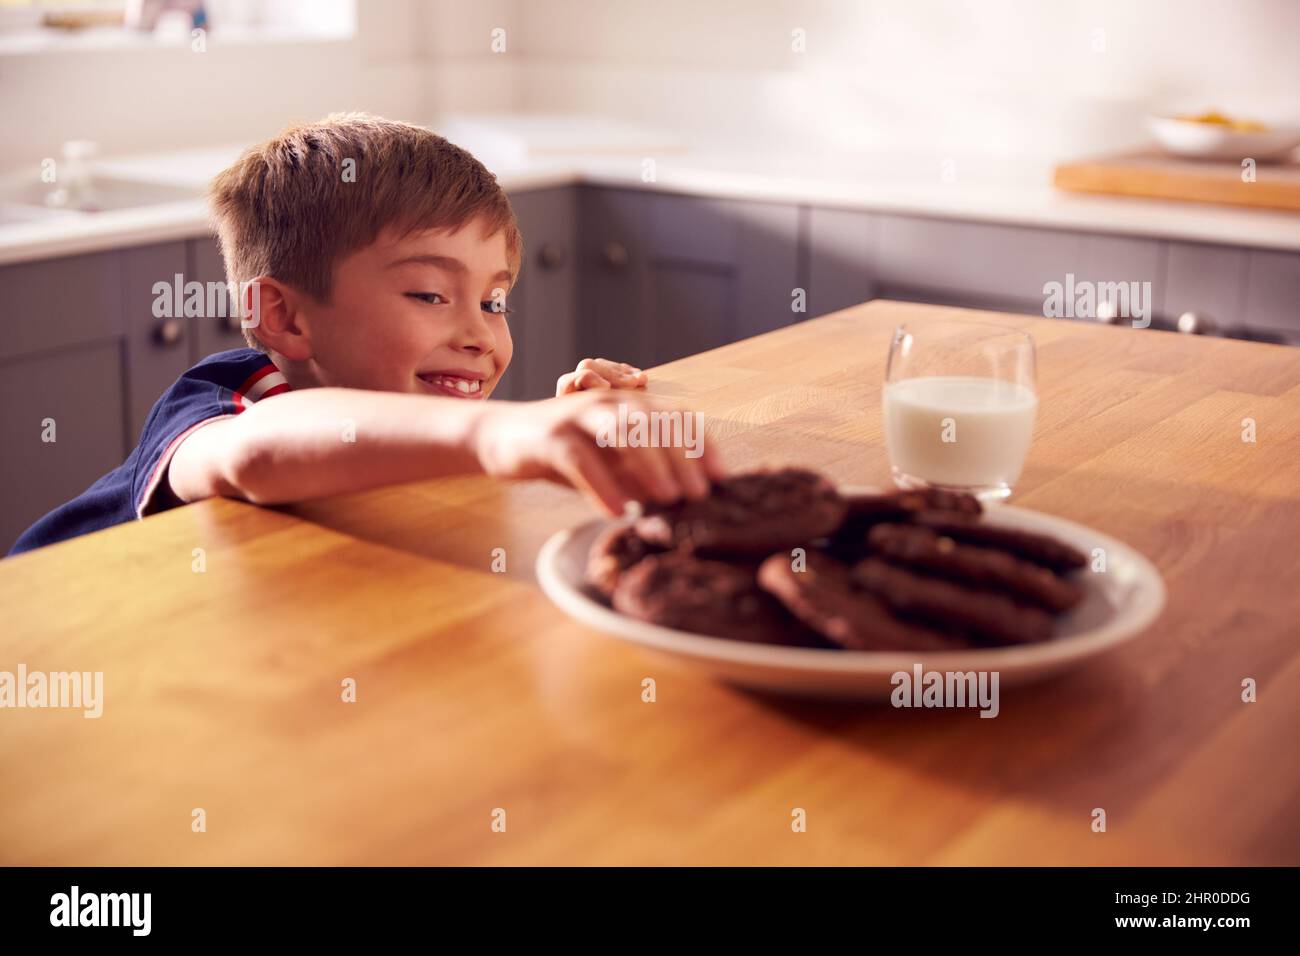 Niño en casa en la cocina que se acerca para tomar galletas del plato en el mostrador Foto de stock